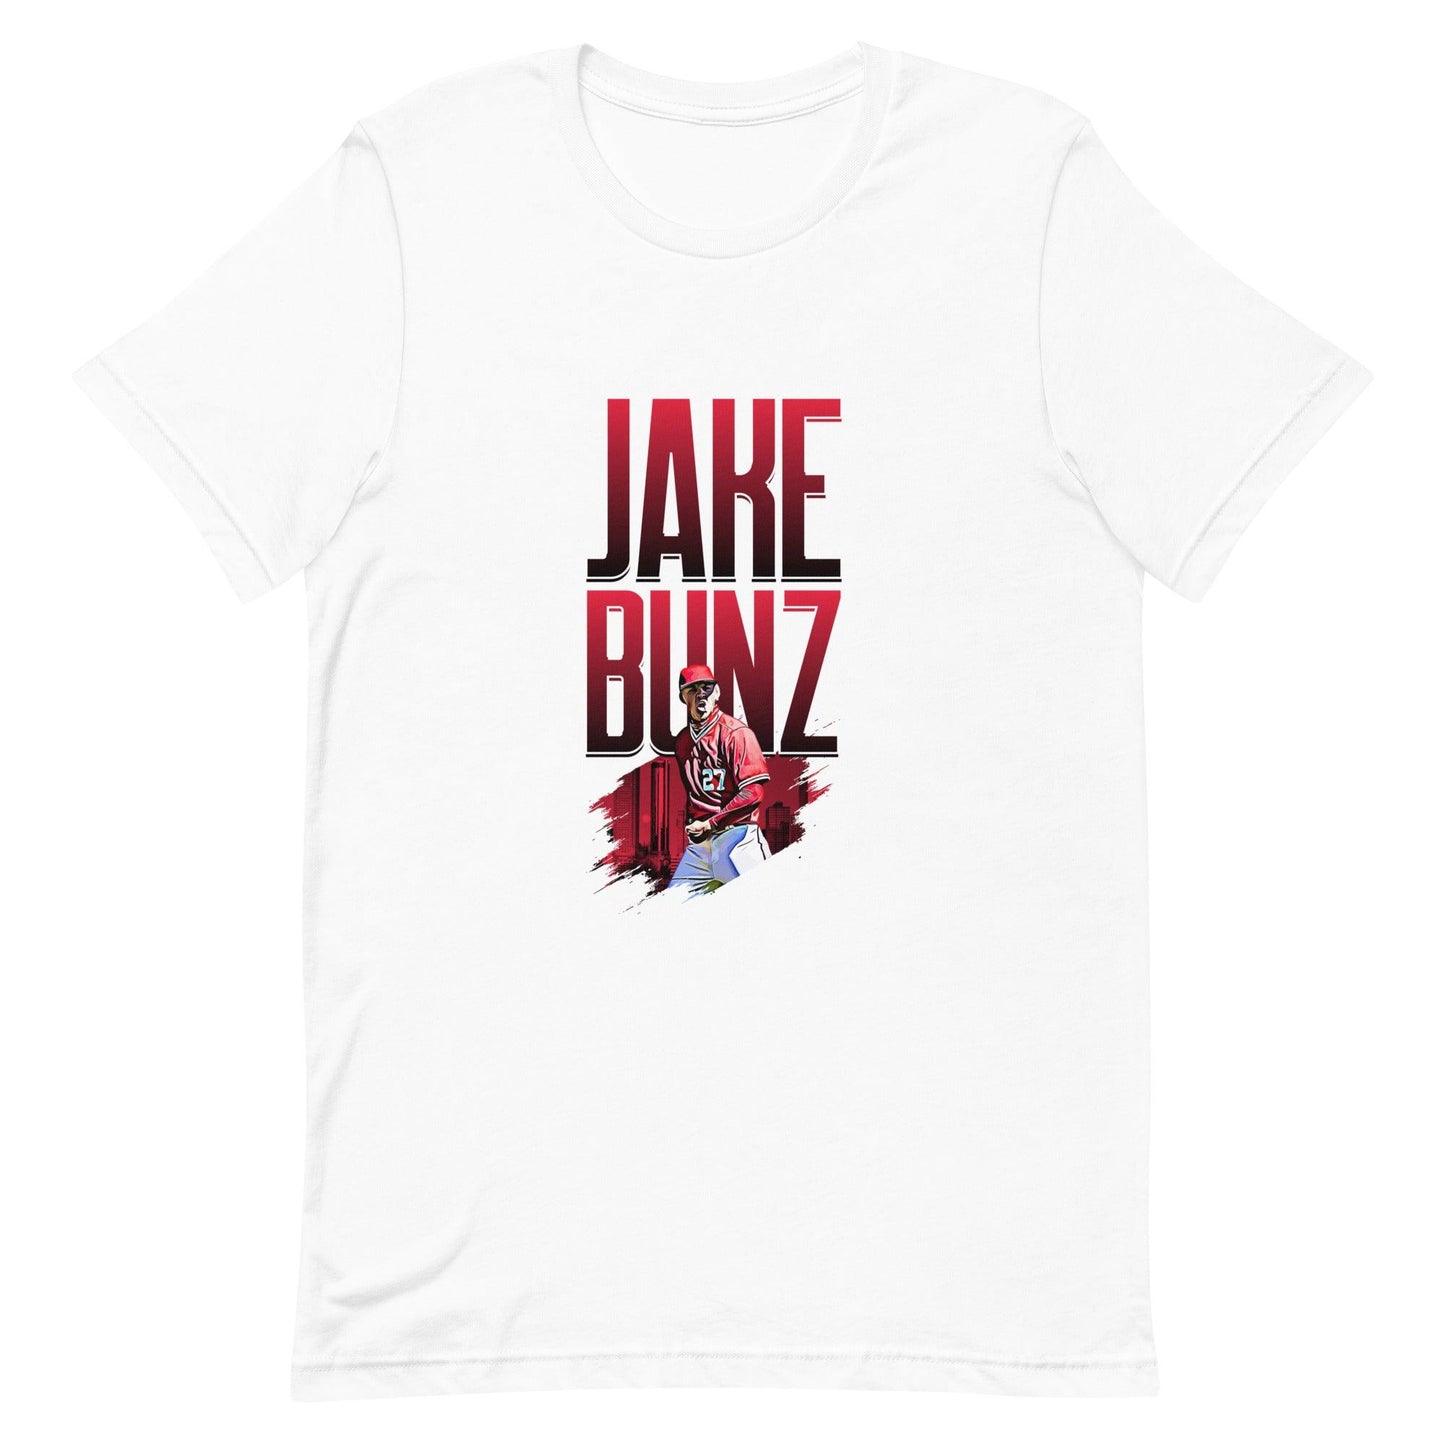 Jake Bunz "Celebrate" t-shirt - Fan Arch